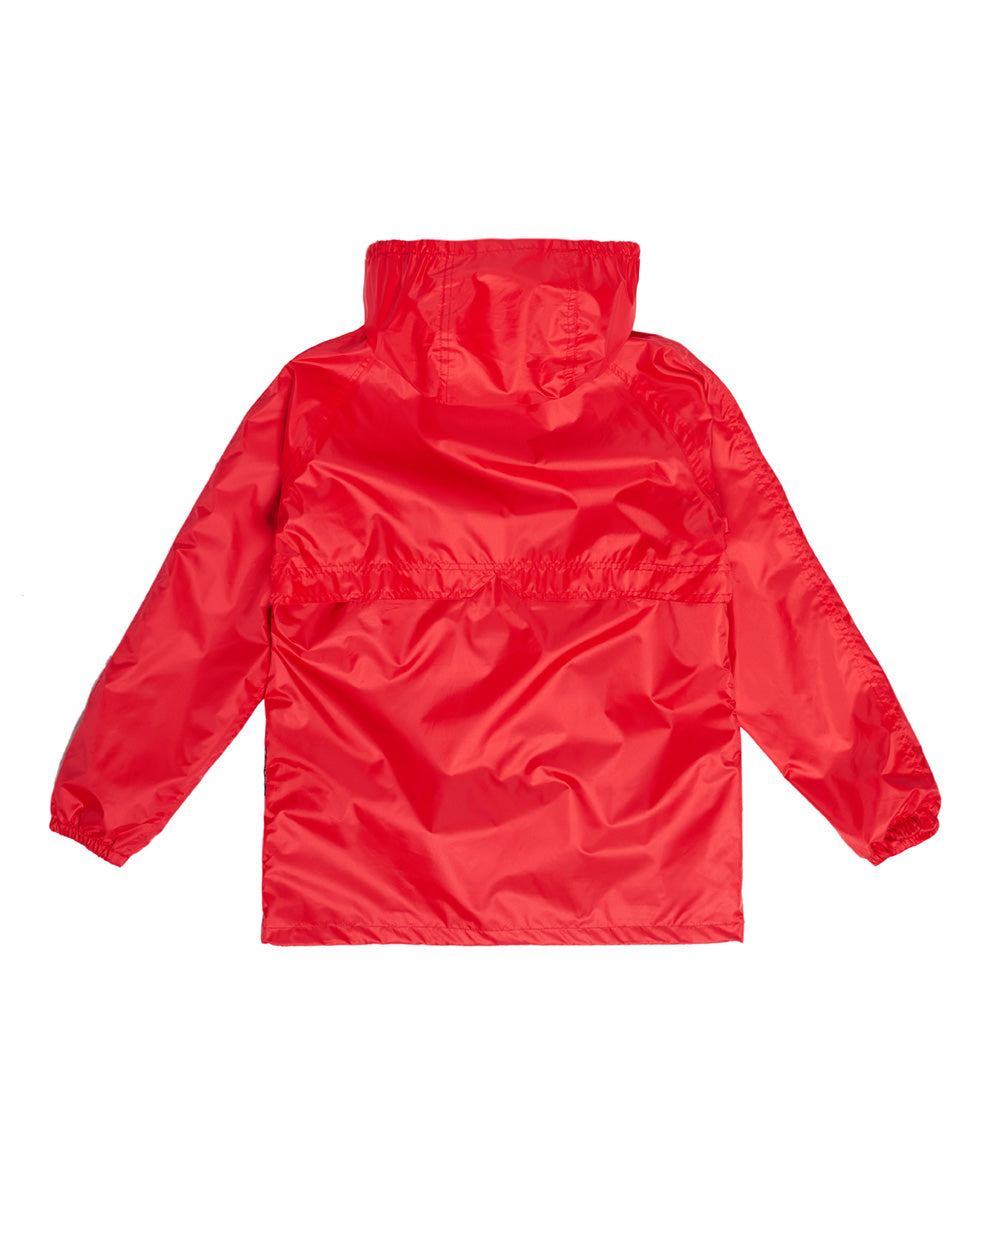 STOWaway Kids Jacket in Red